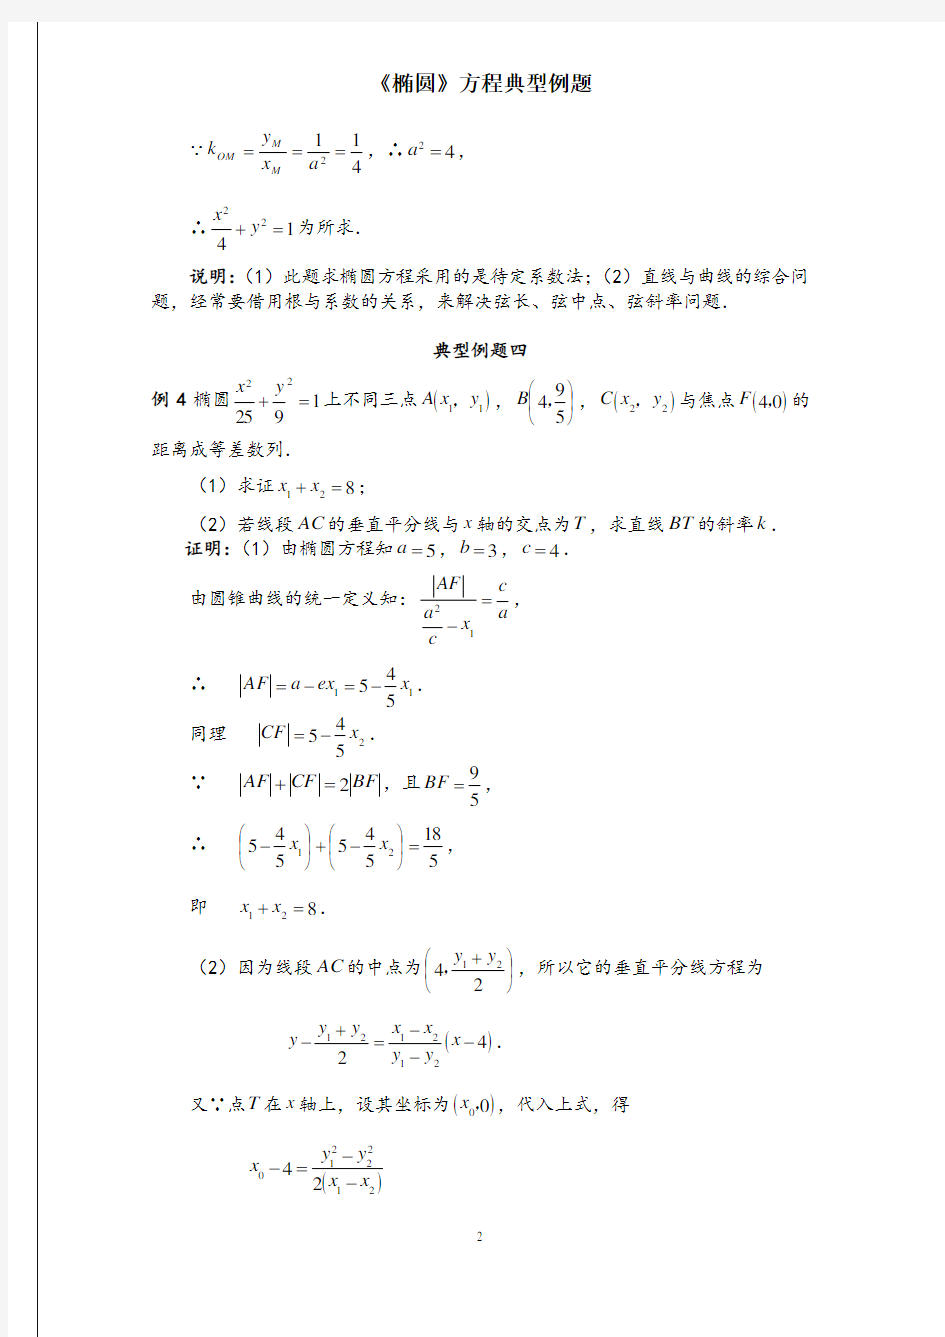 《椭圆》方程典型例题20例(含标准答案)